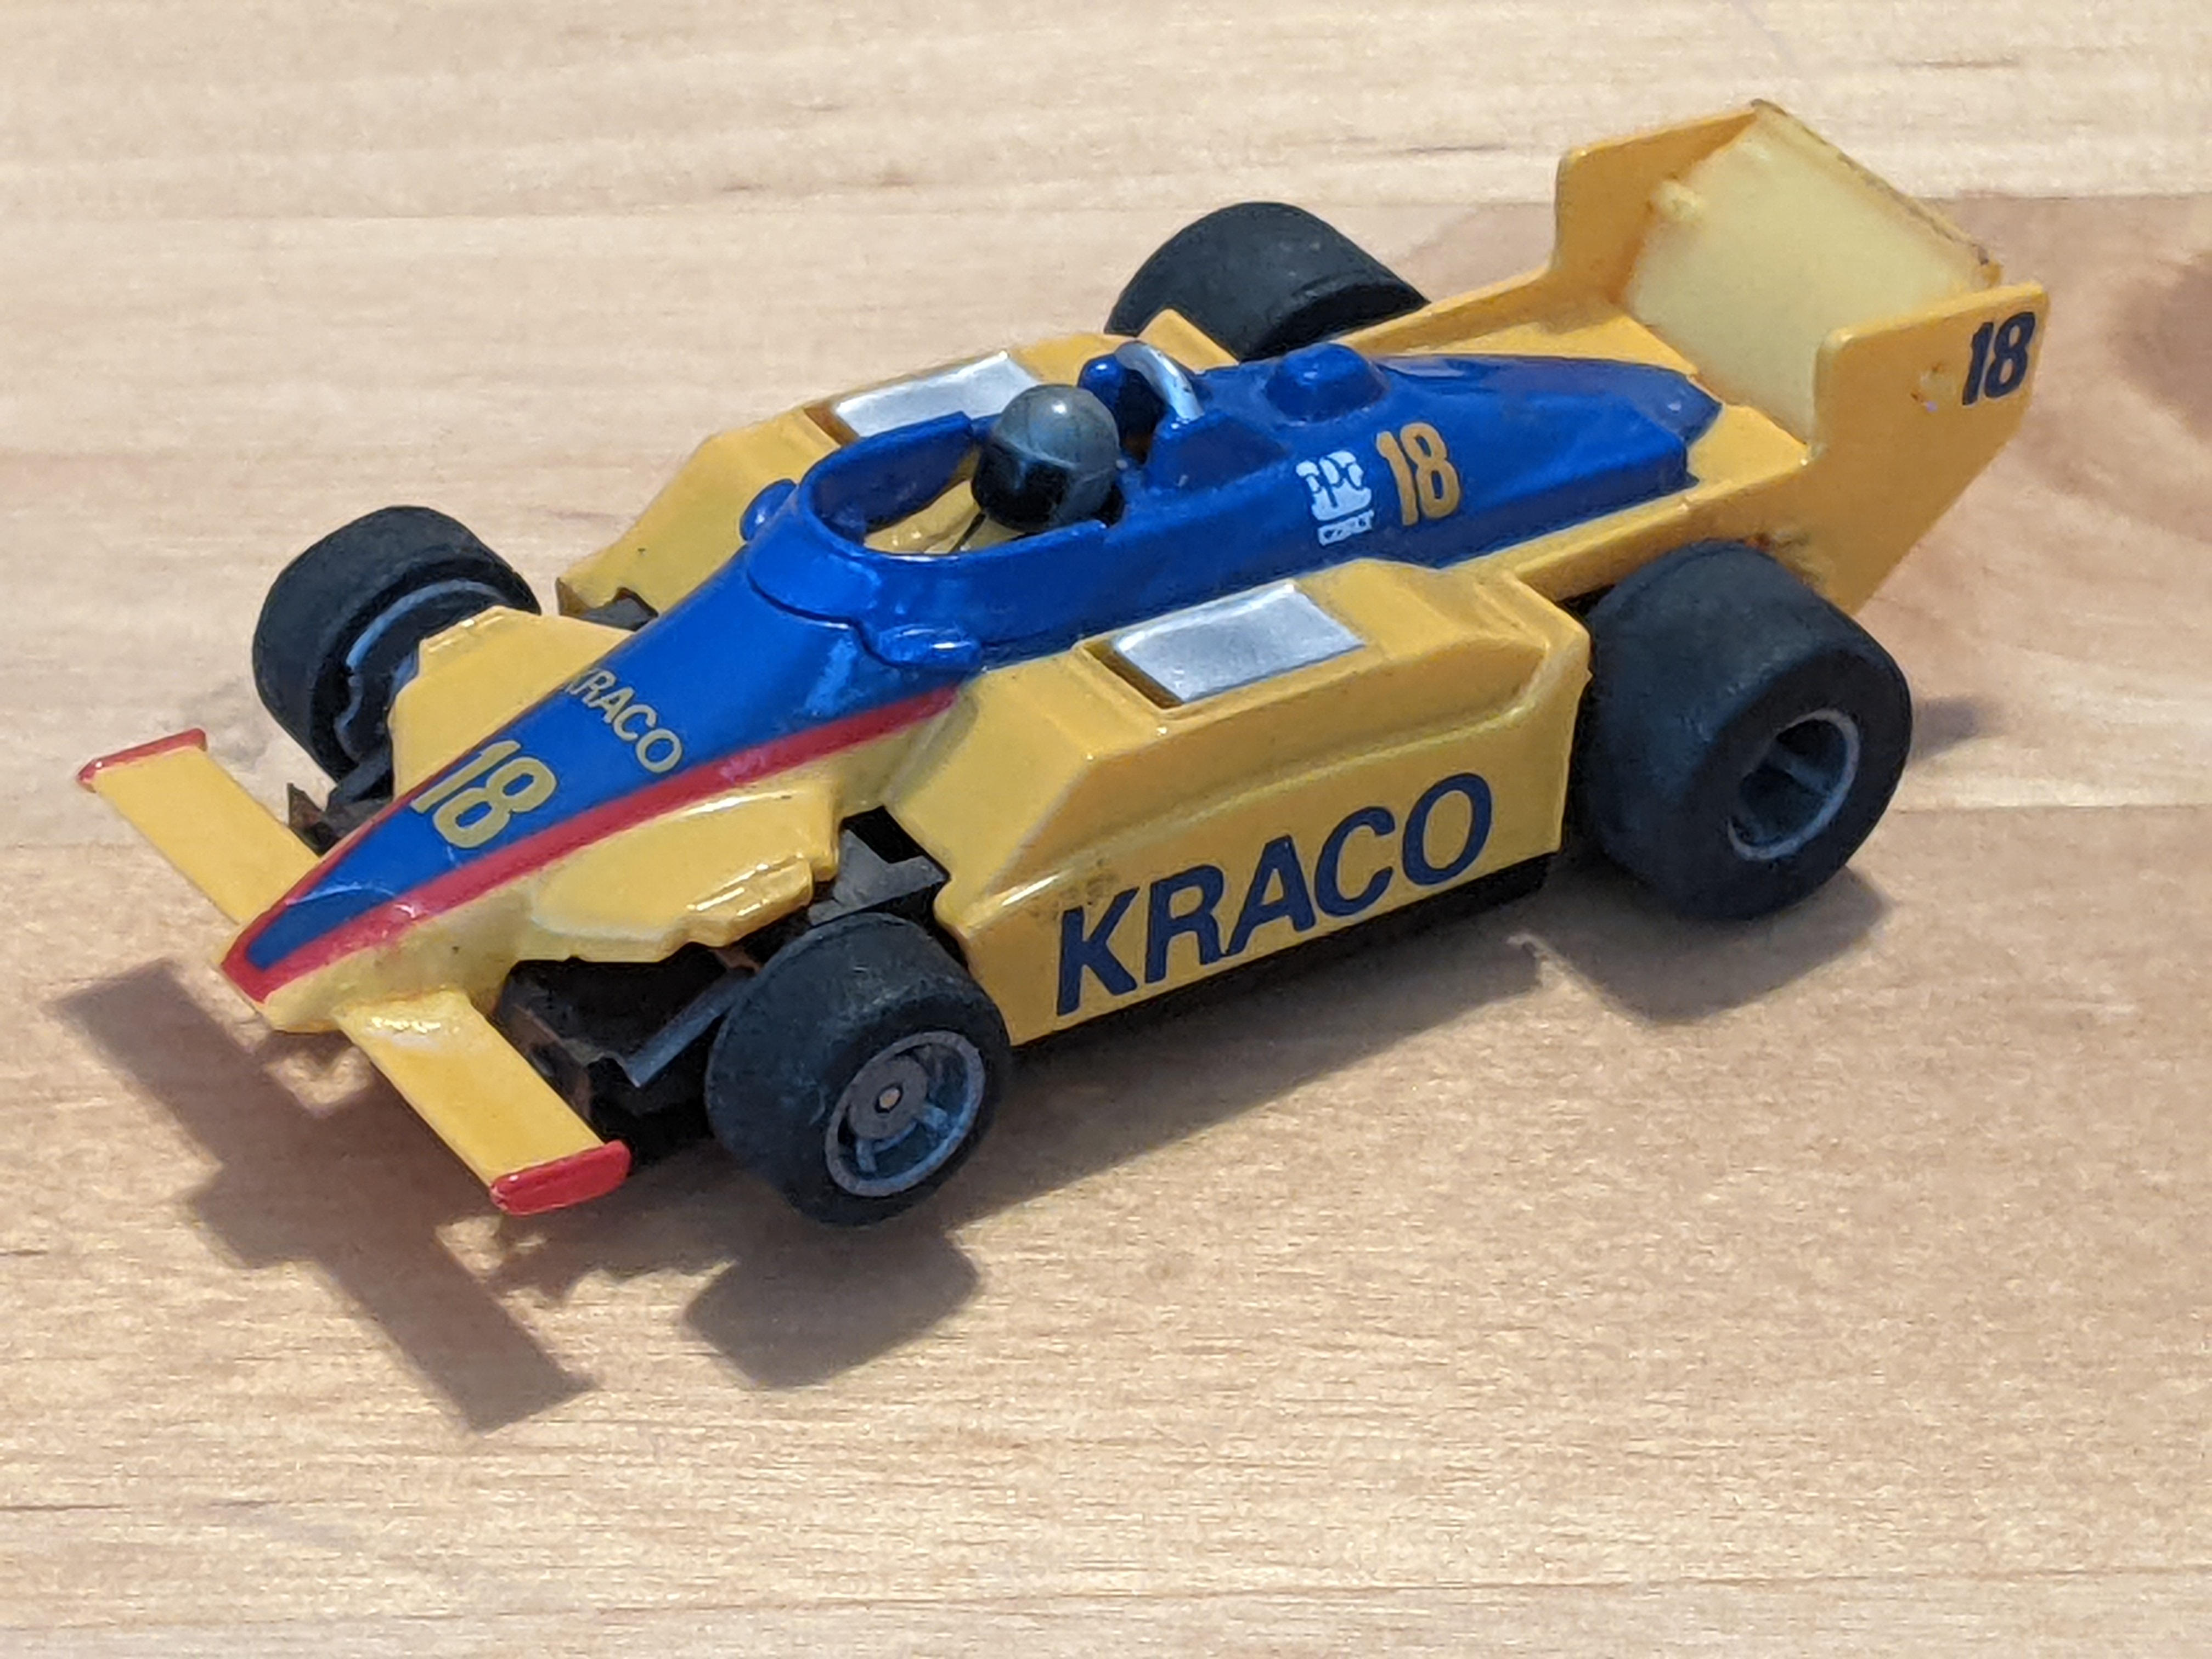 1987 March 87C Indy car - Kraco